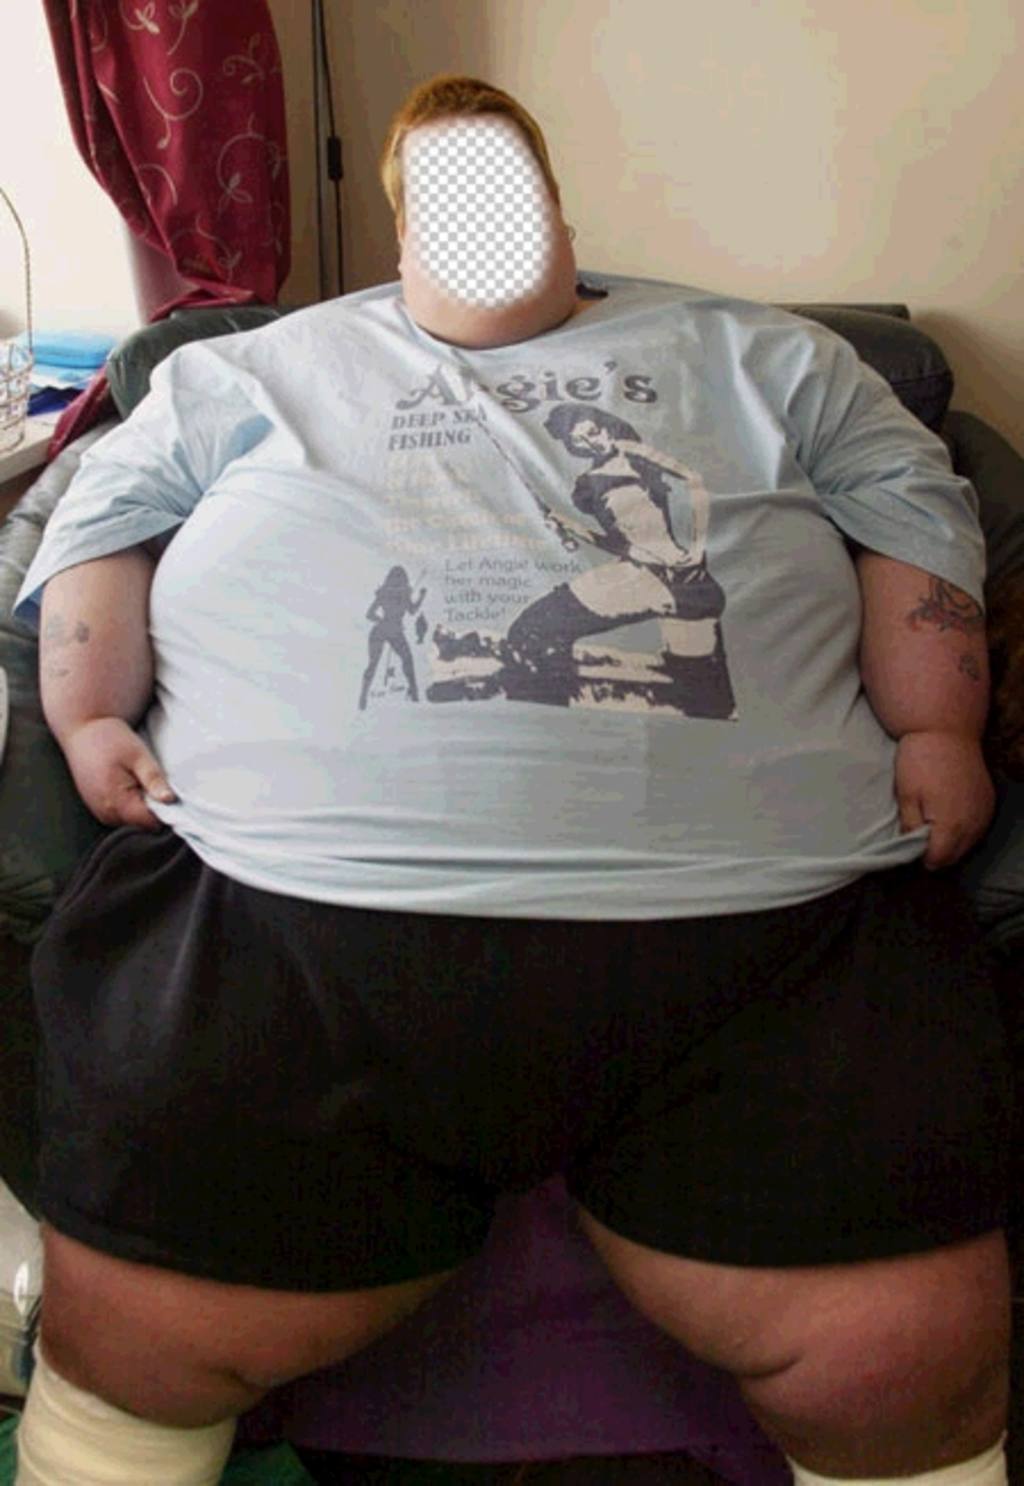 Русская жирдяйка отсасывает у толстяка в спальне